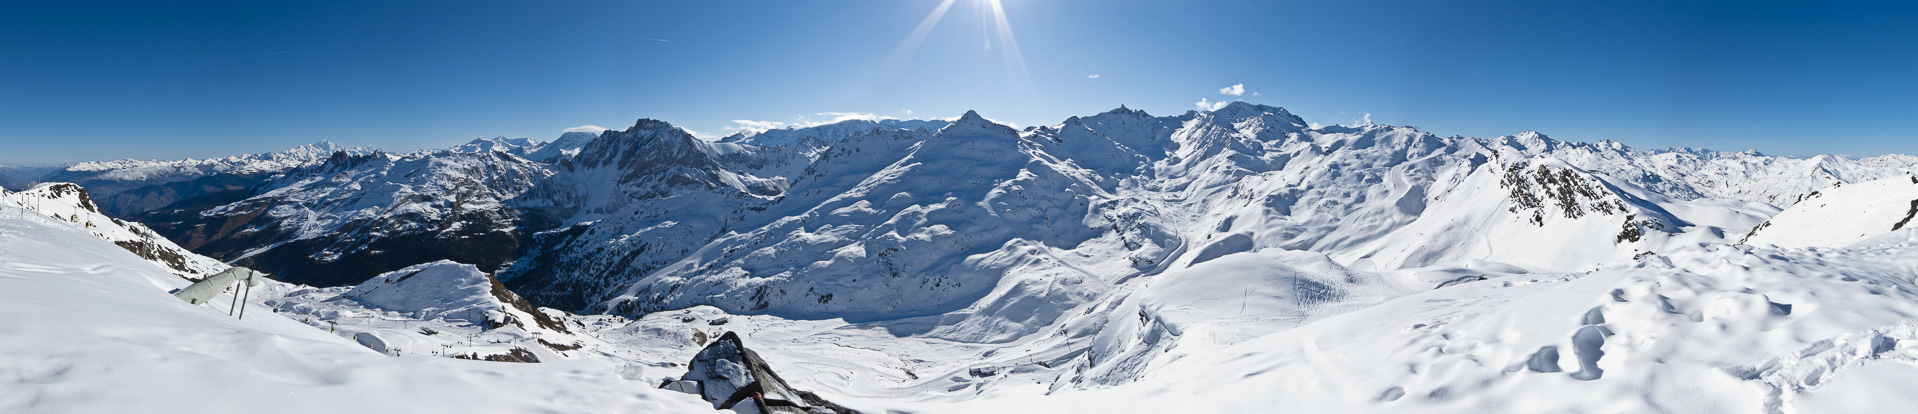 Panorama mit Mont Blanc und der Meije.